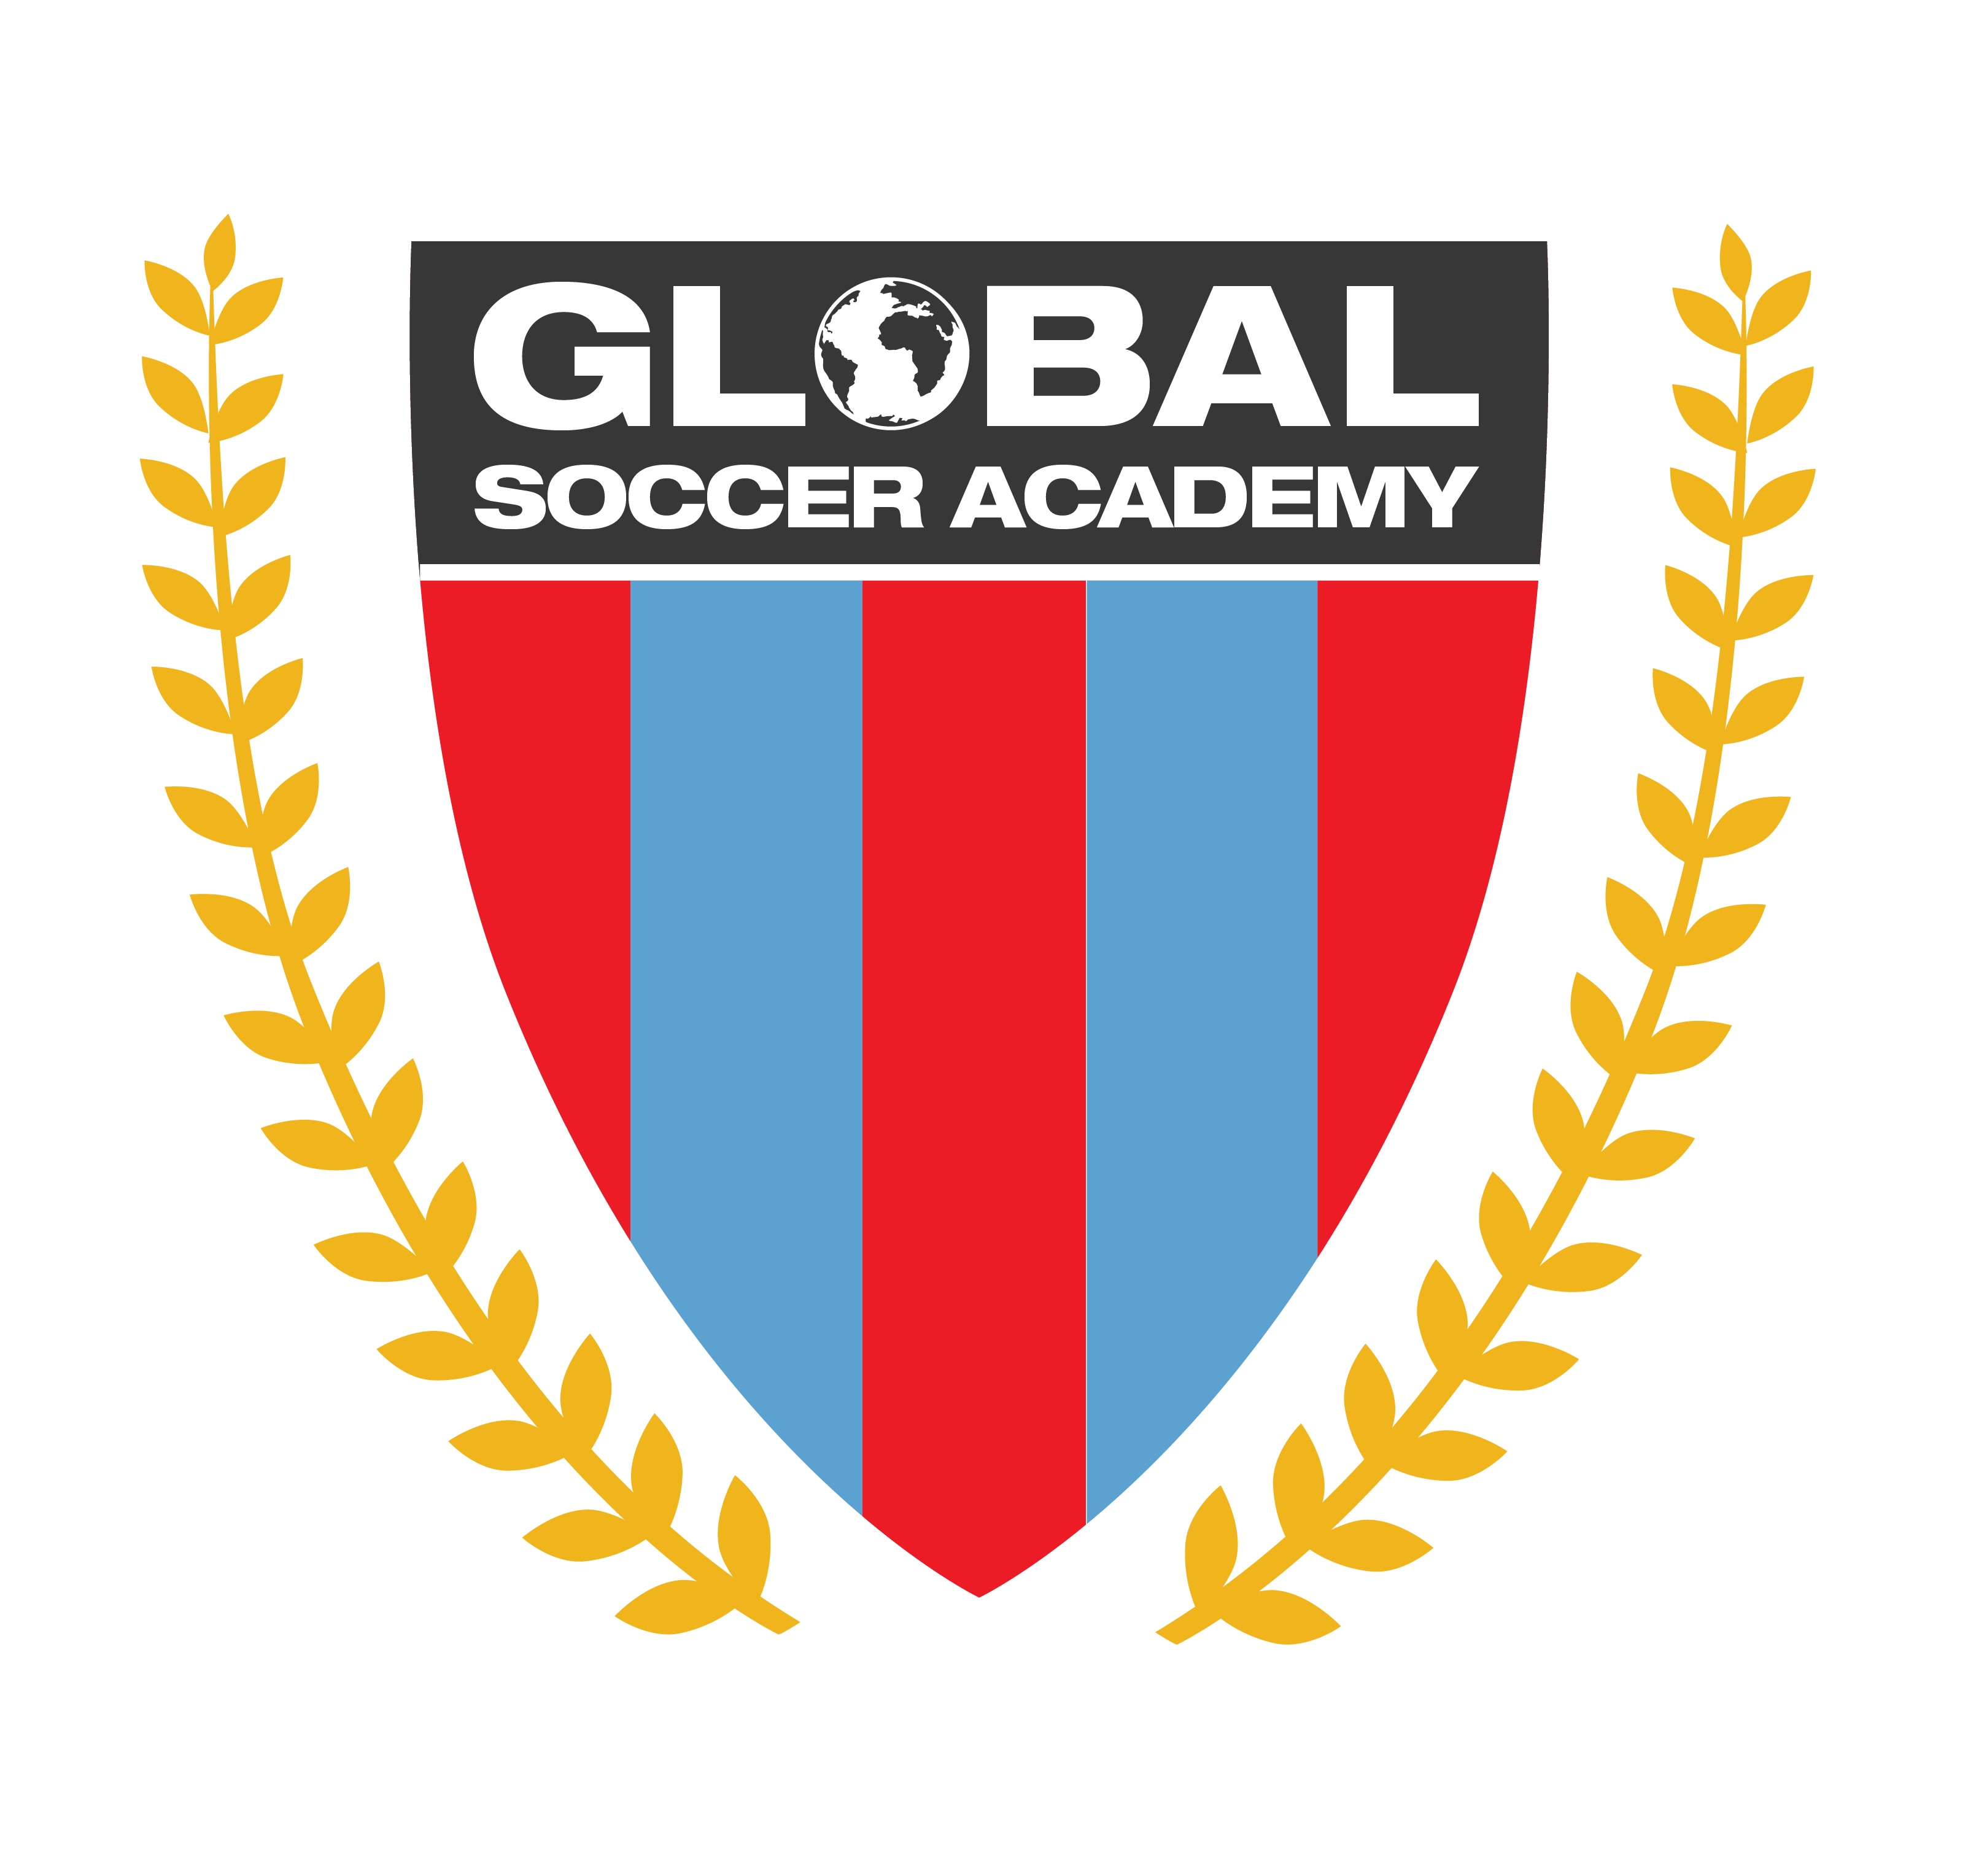 Global Soccer Academy team badge